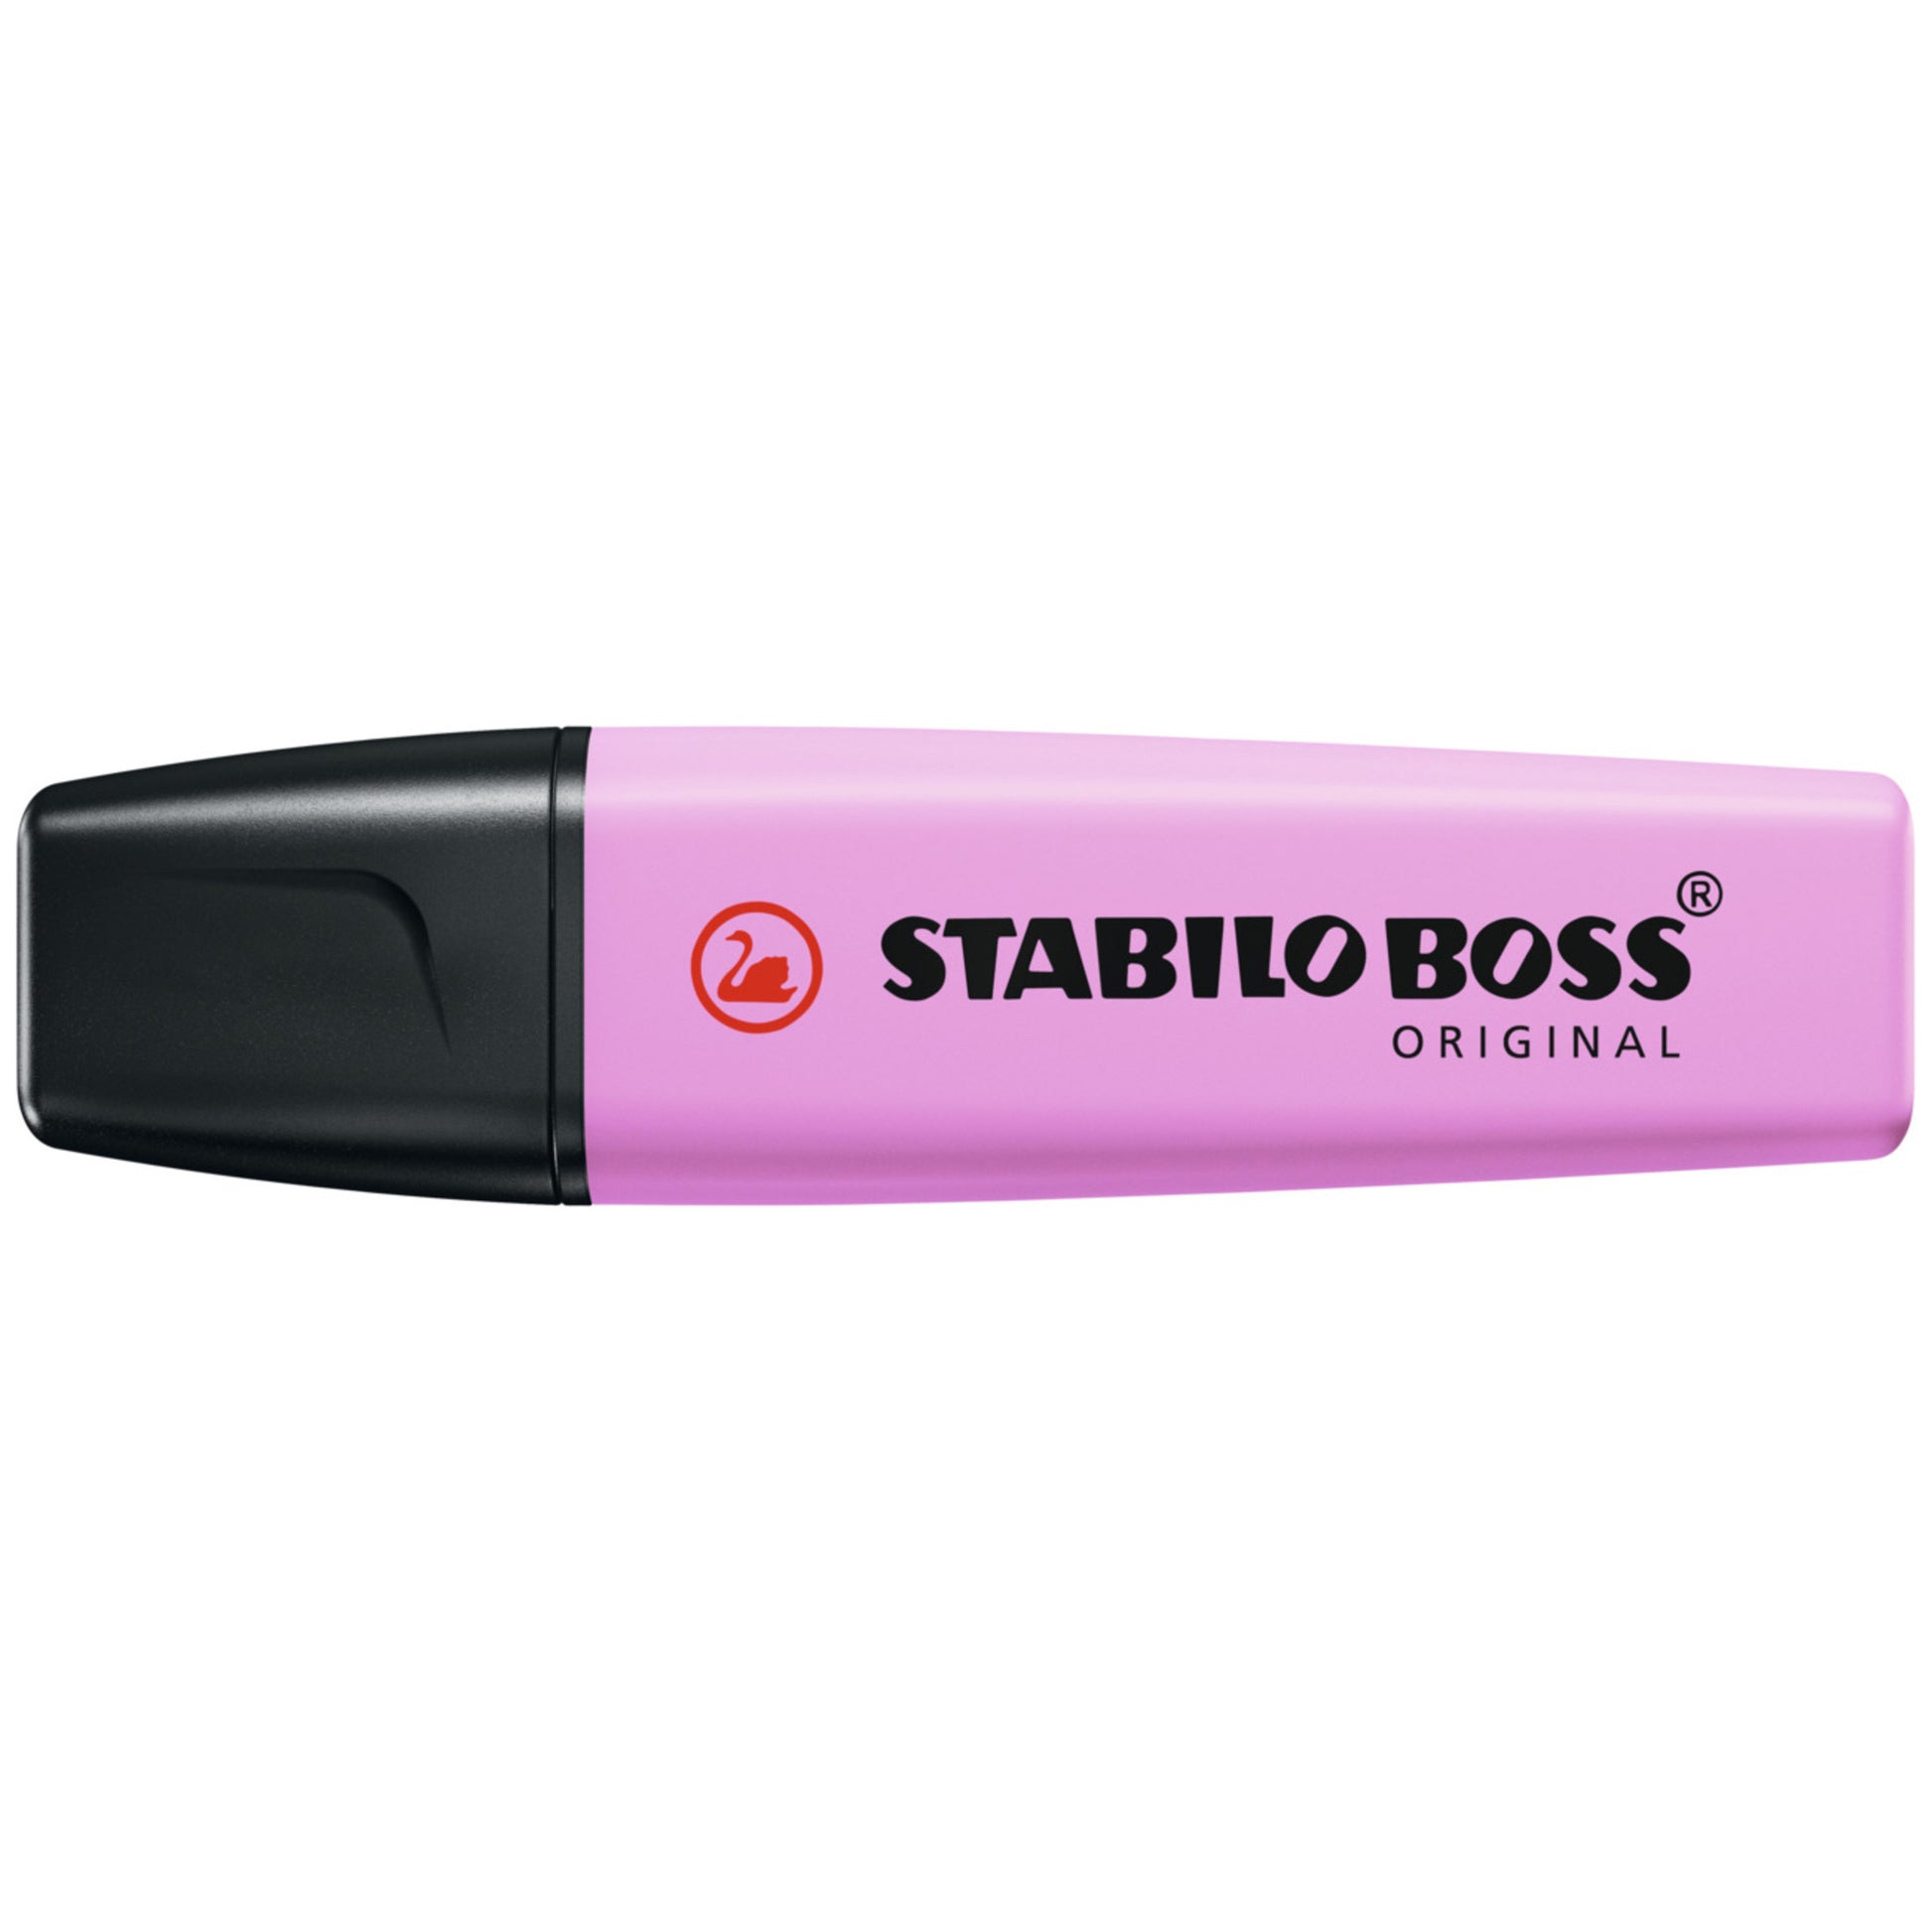 Stabilo BOSS Pastel Highlighters – K. A. Artist Shop